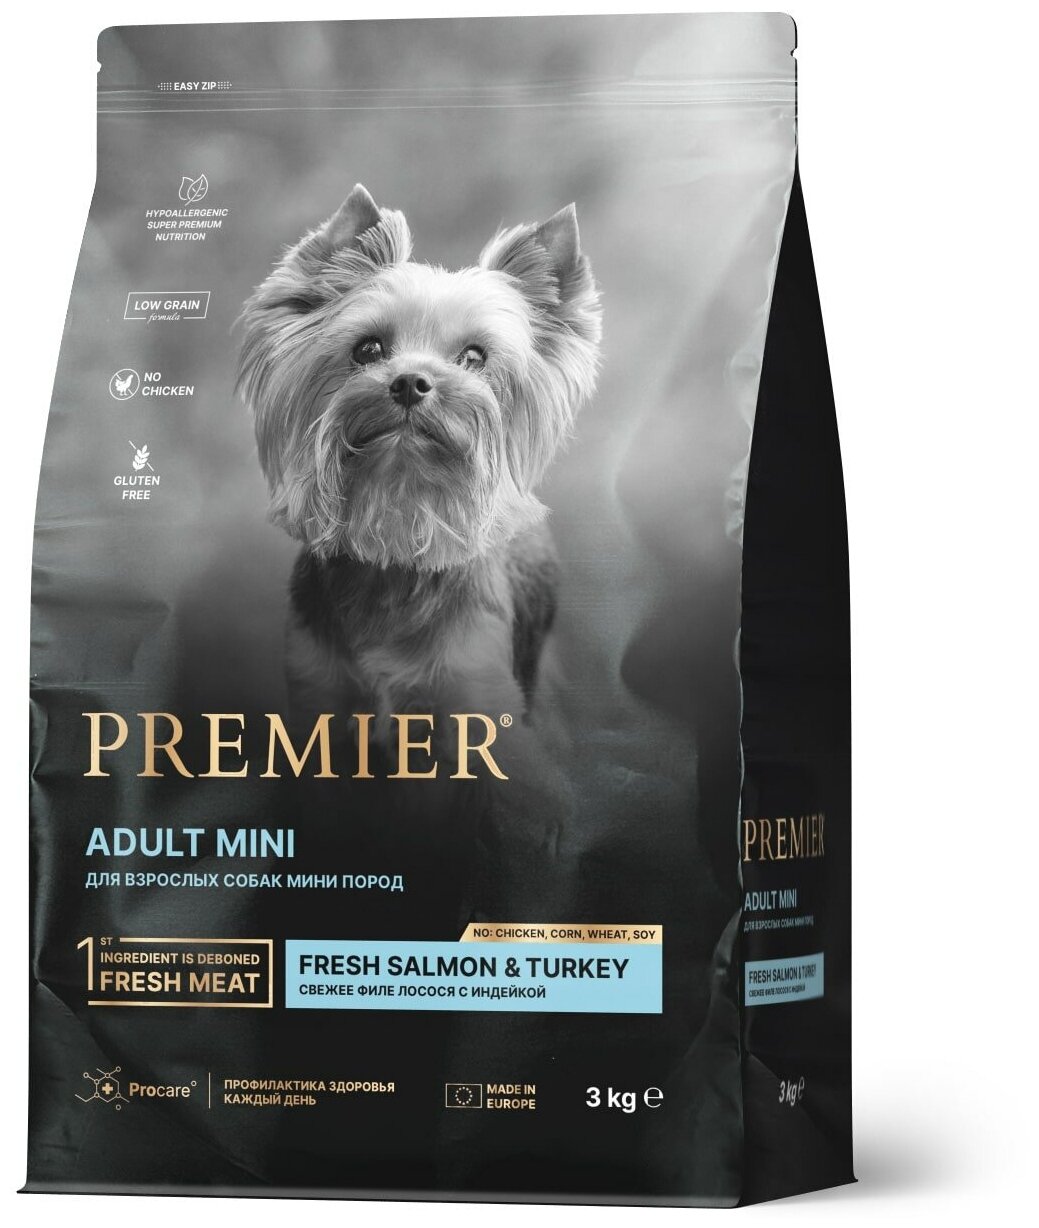 Premier Dog Adult Mini сухой корм для взрослых собак мини пород Лосось и индейка, 3 кг.